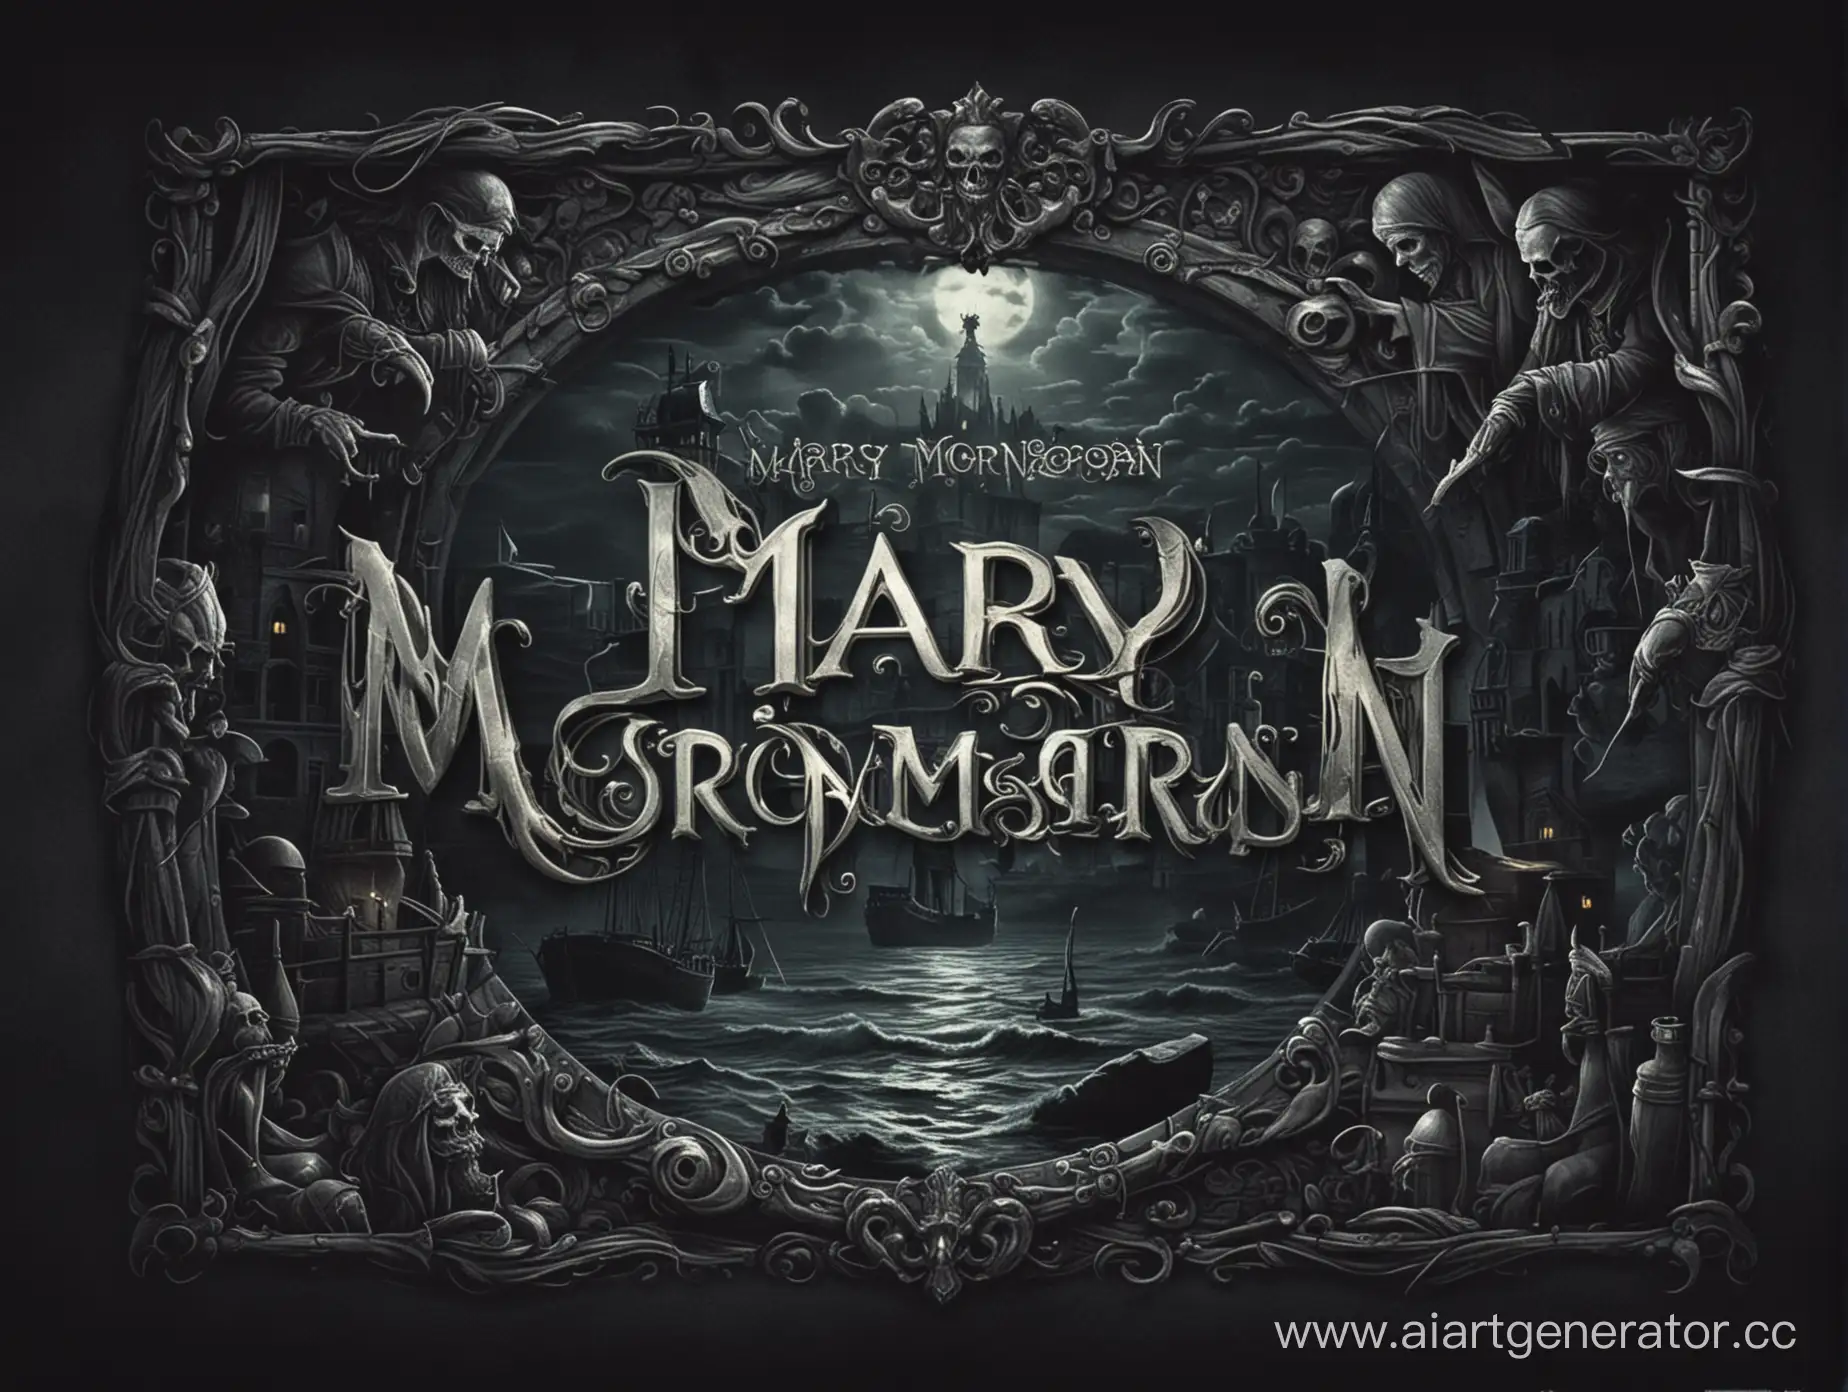 интерфейс главного меню игры "Mary Morgan" в загадочном и мрачном стиле